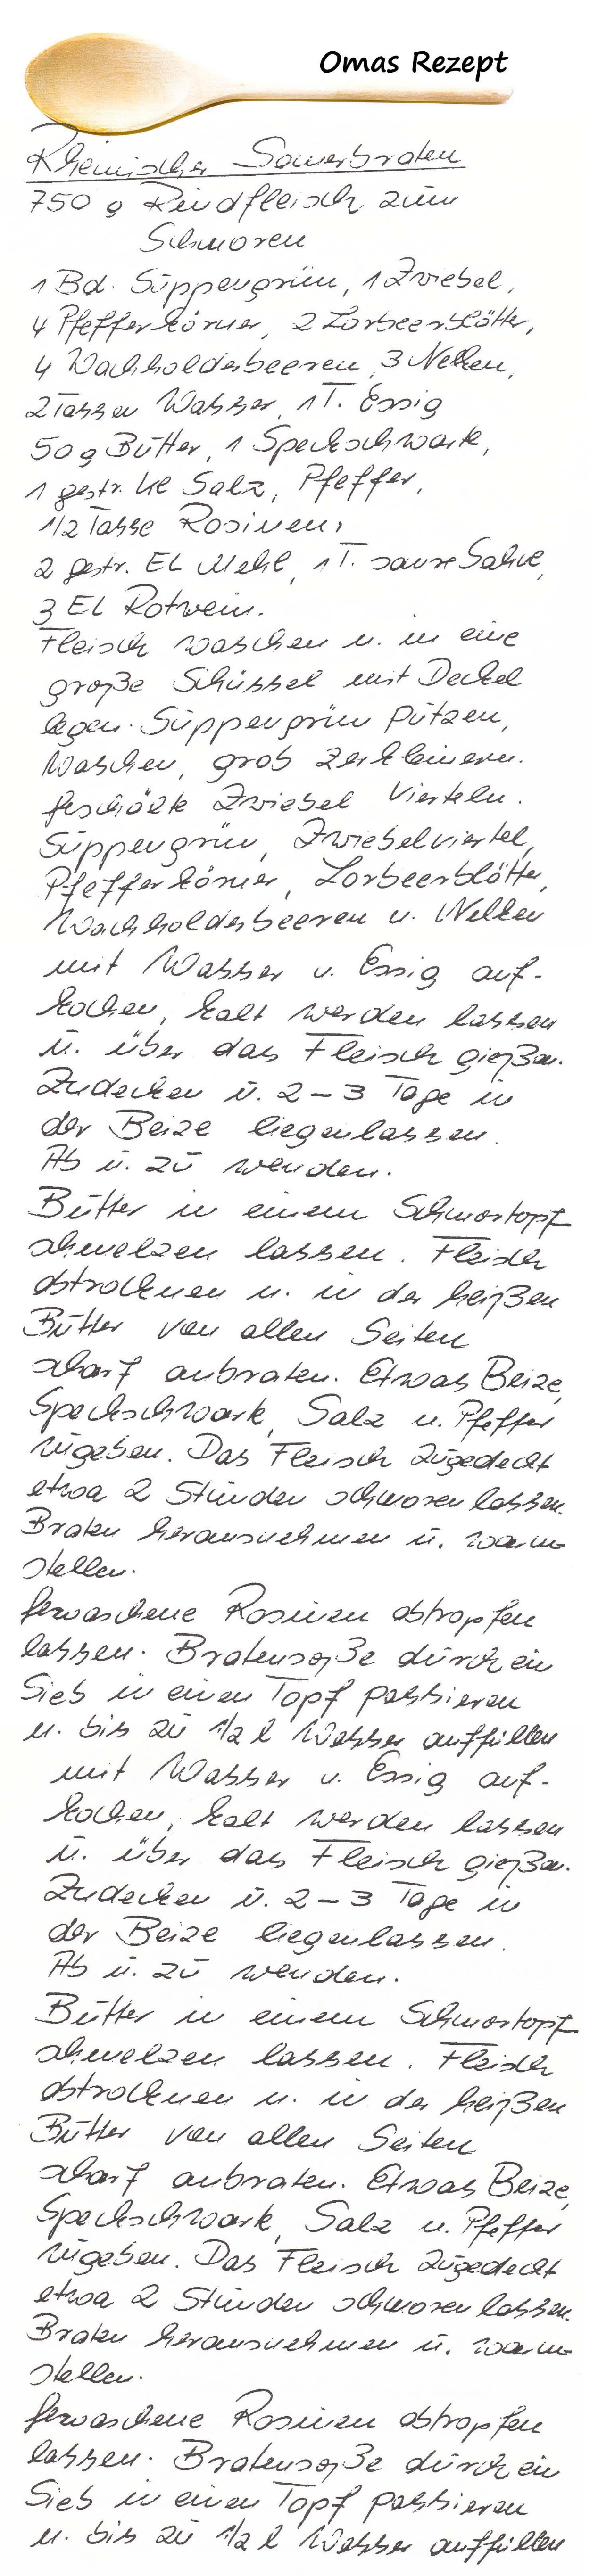 Rheinischer Sauerbraten aus Omas Kochbuch Rezepte